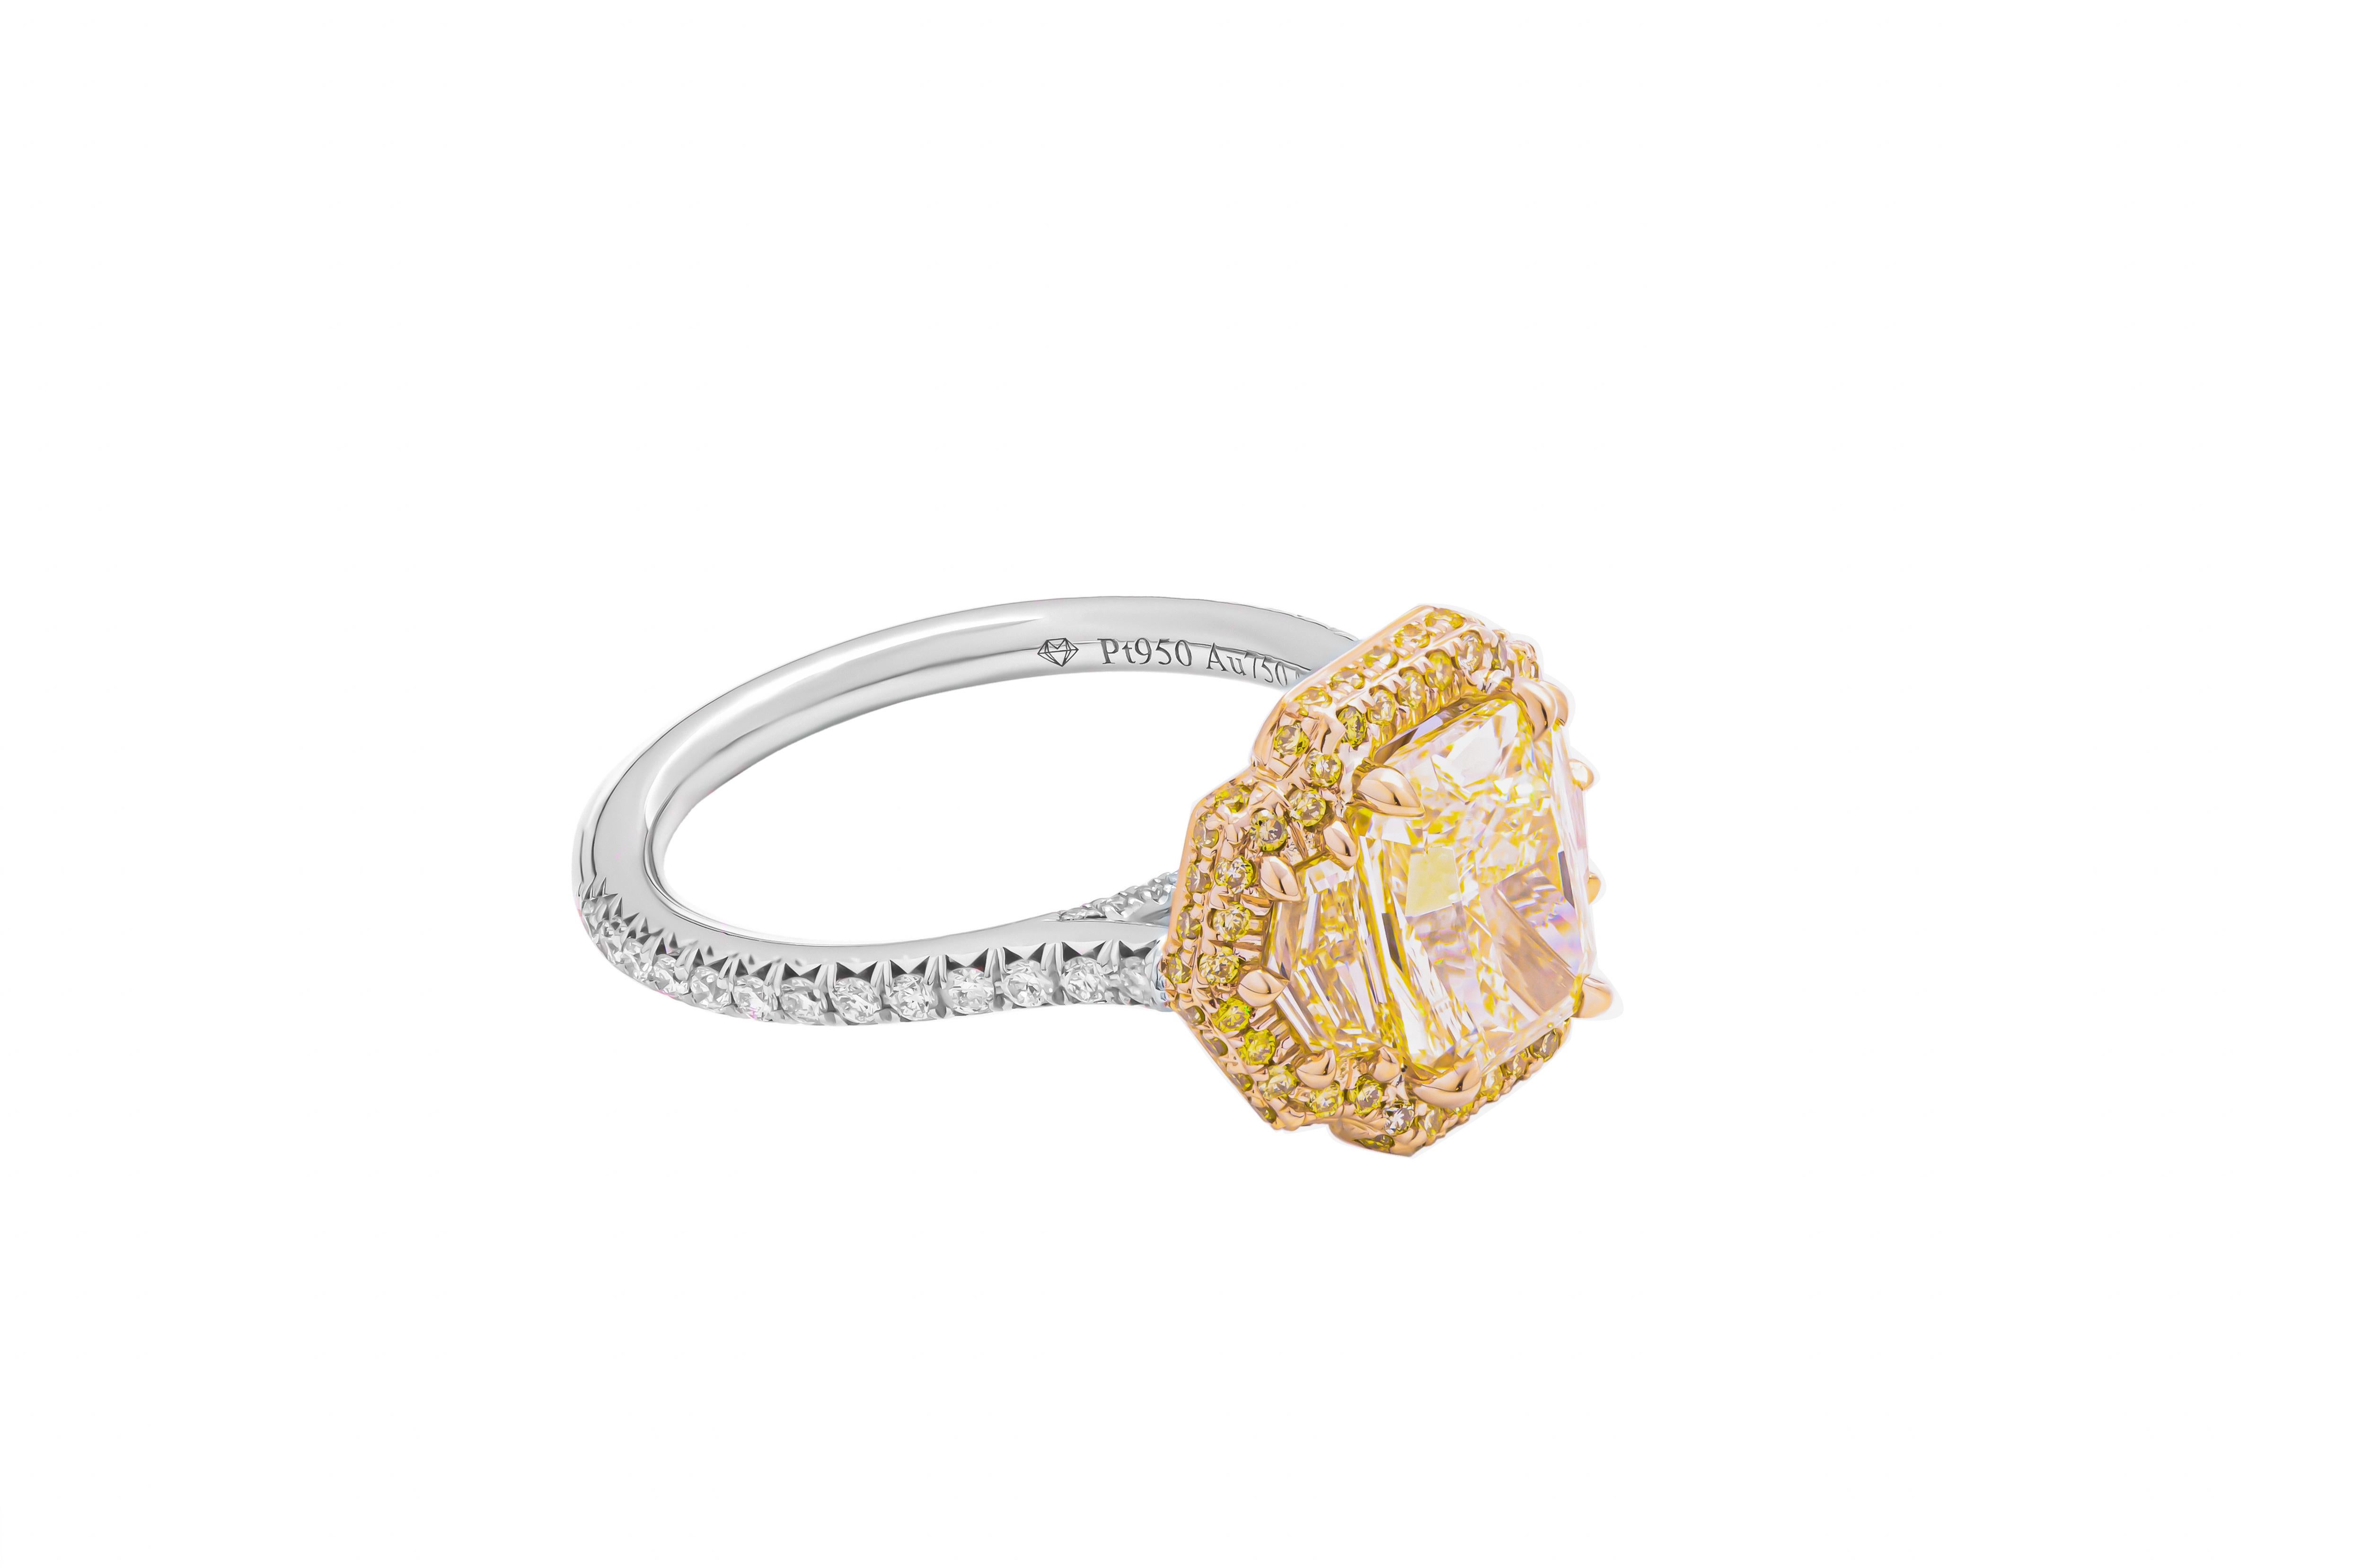 Unser exquisiter 3-Stein-Ring aus Platin und 18-karätigem Gelbgold wurde sorgfältig gefertigt, um zeitlose Eleganz zu präsentieren. Das Herzstück dieses prächtigen Rings ist ein atemberaubender 2,14 Karat Fancy Light Yellow VS2 Radiant Diamant, der